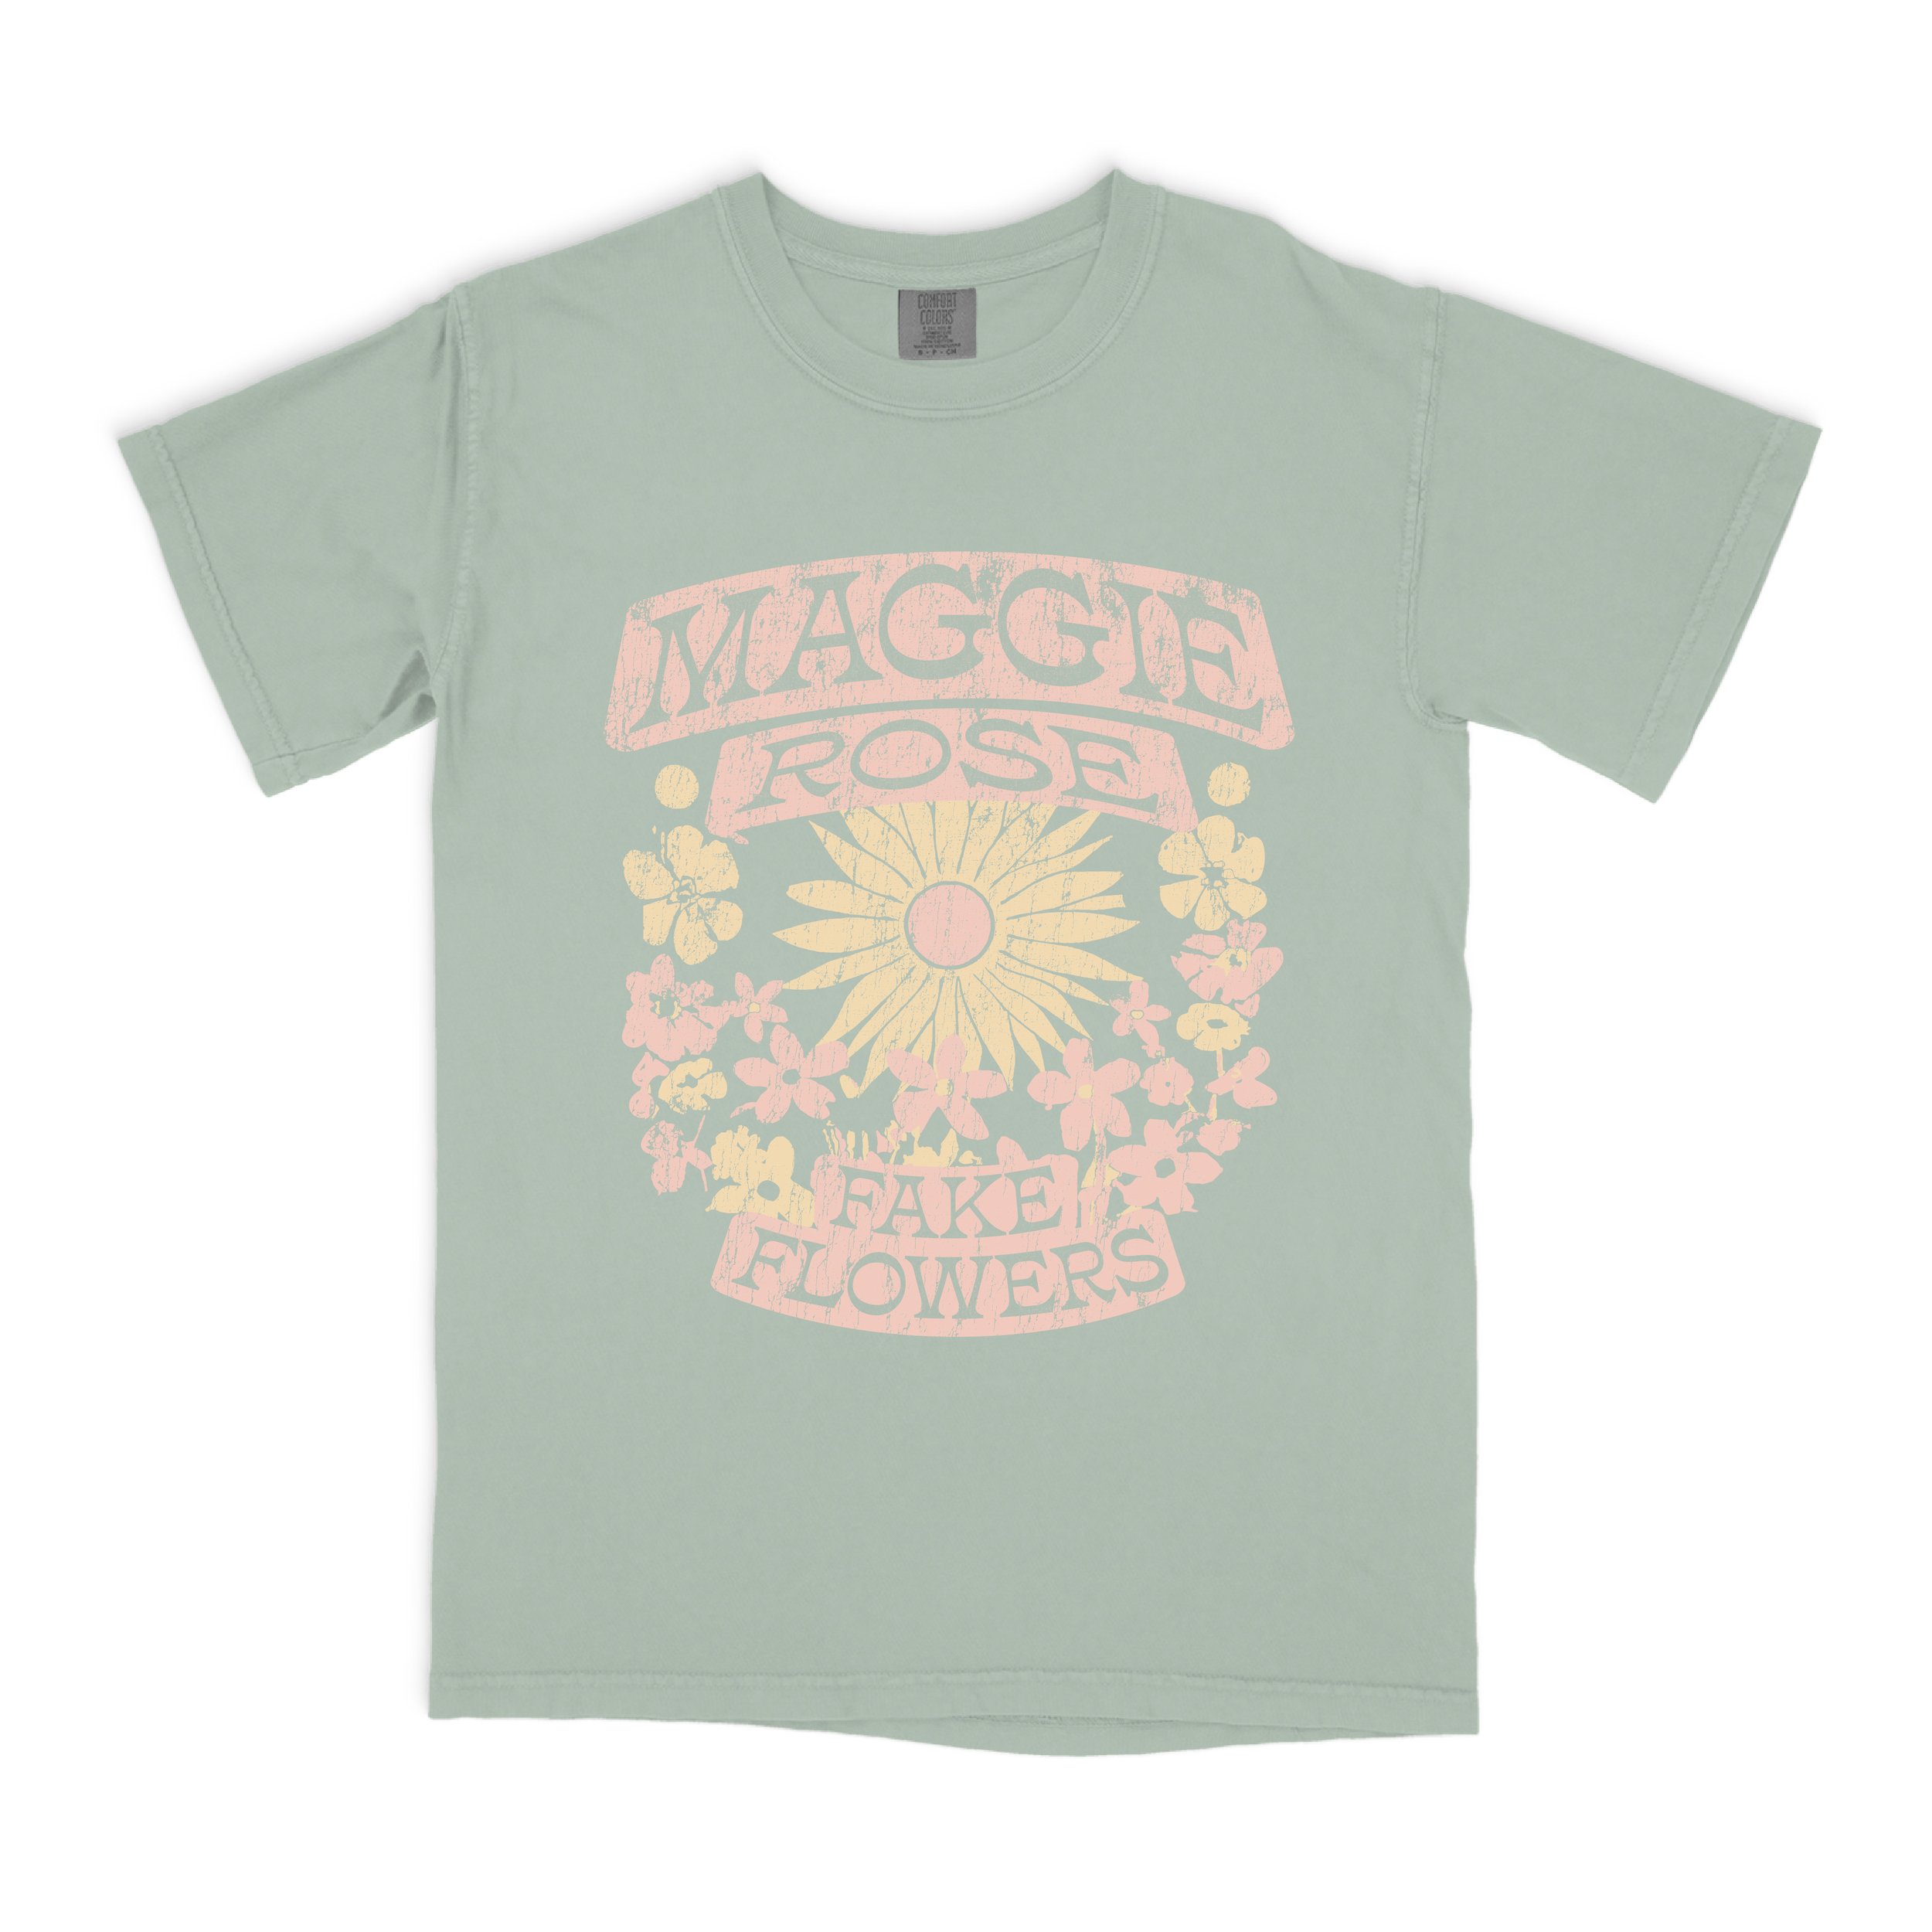 Maggie Rose - Fake Flowers Tees.jpg